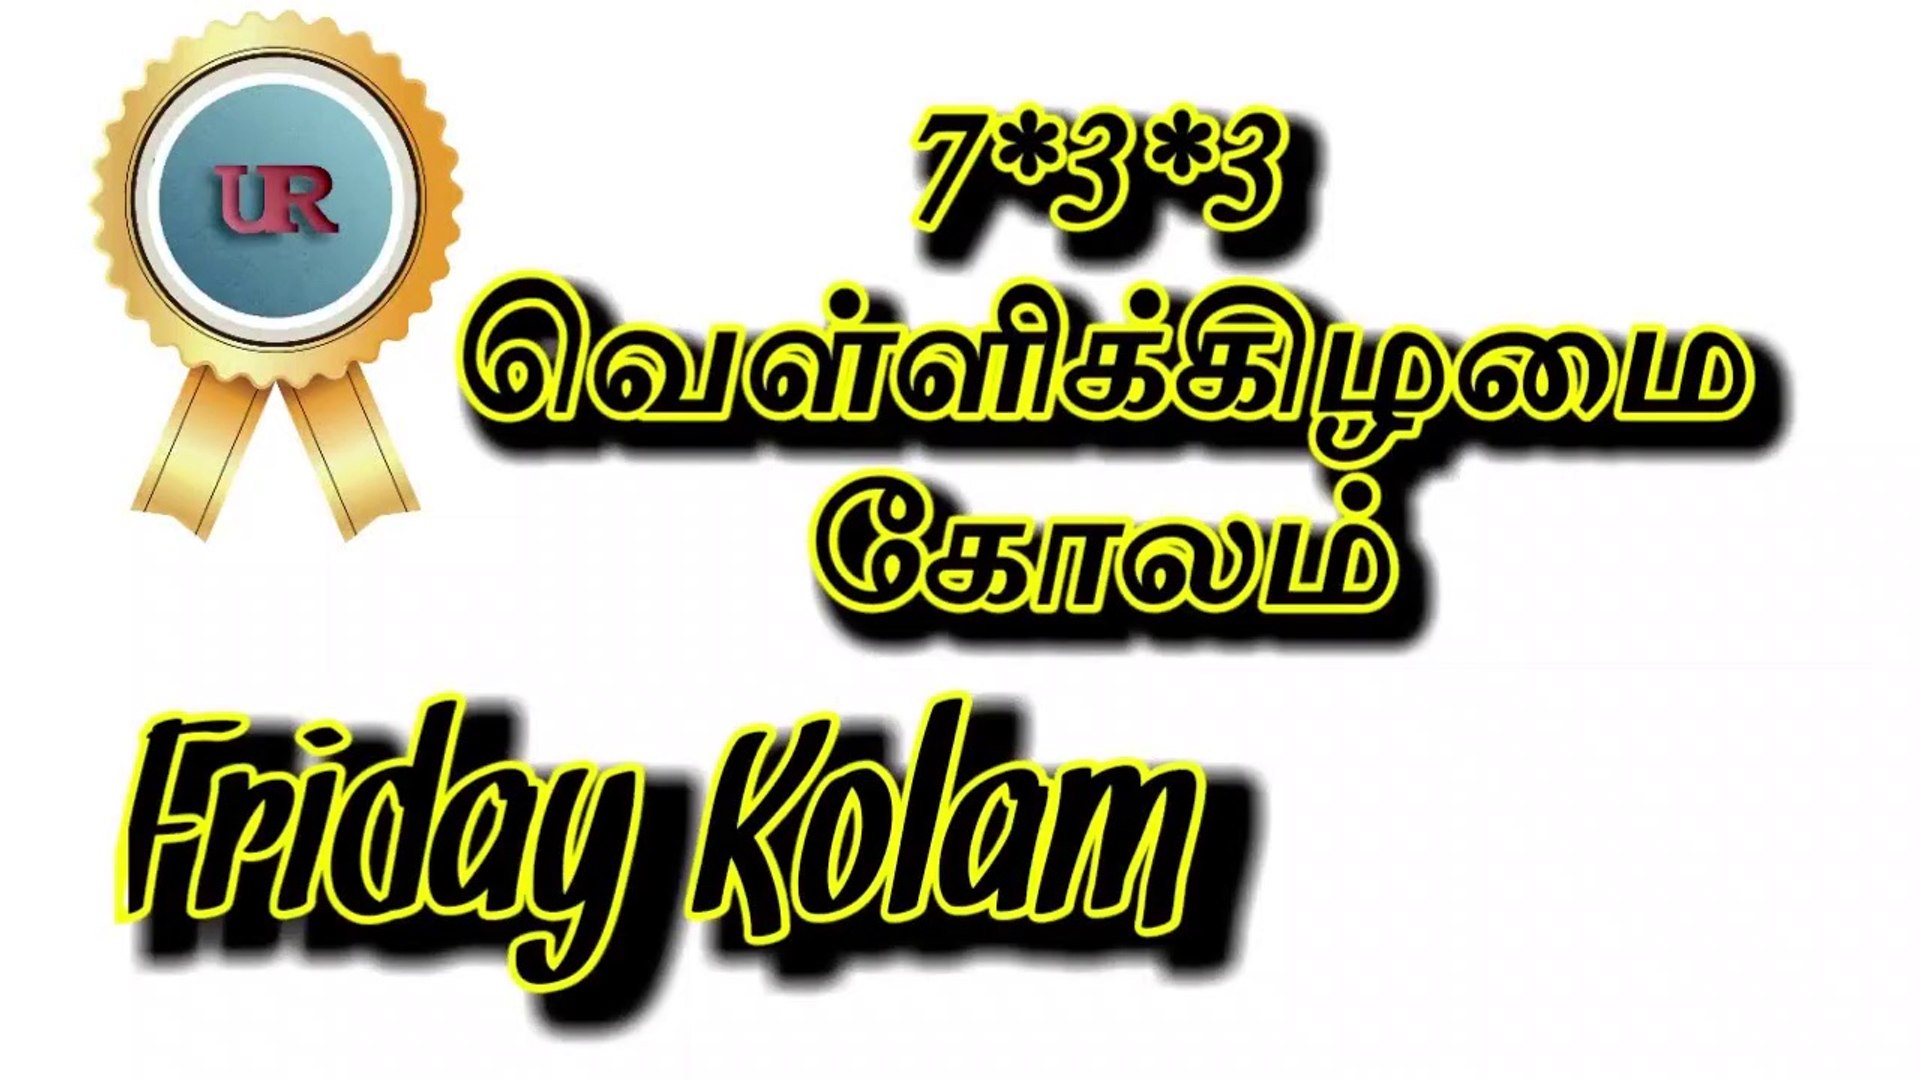 7x3x3 Friday Kolam | Ep.6 #Rangoli #Kolam #tamilnadu #tamil #daily #FridayKolam #Friday